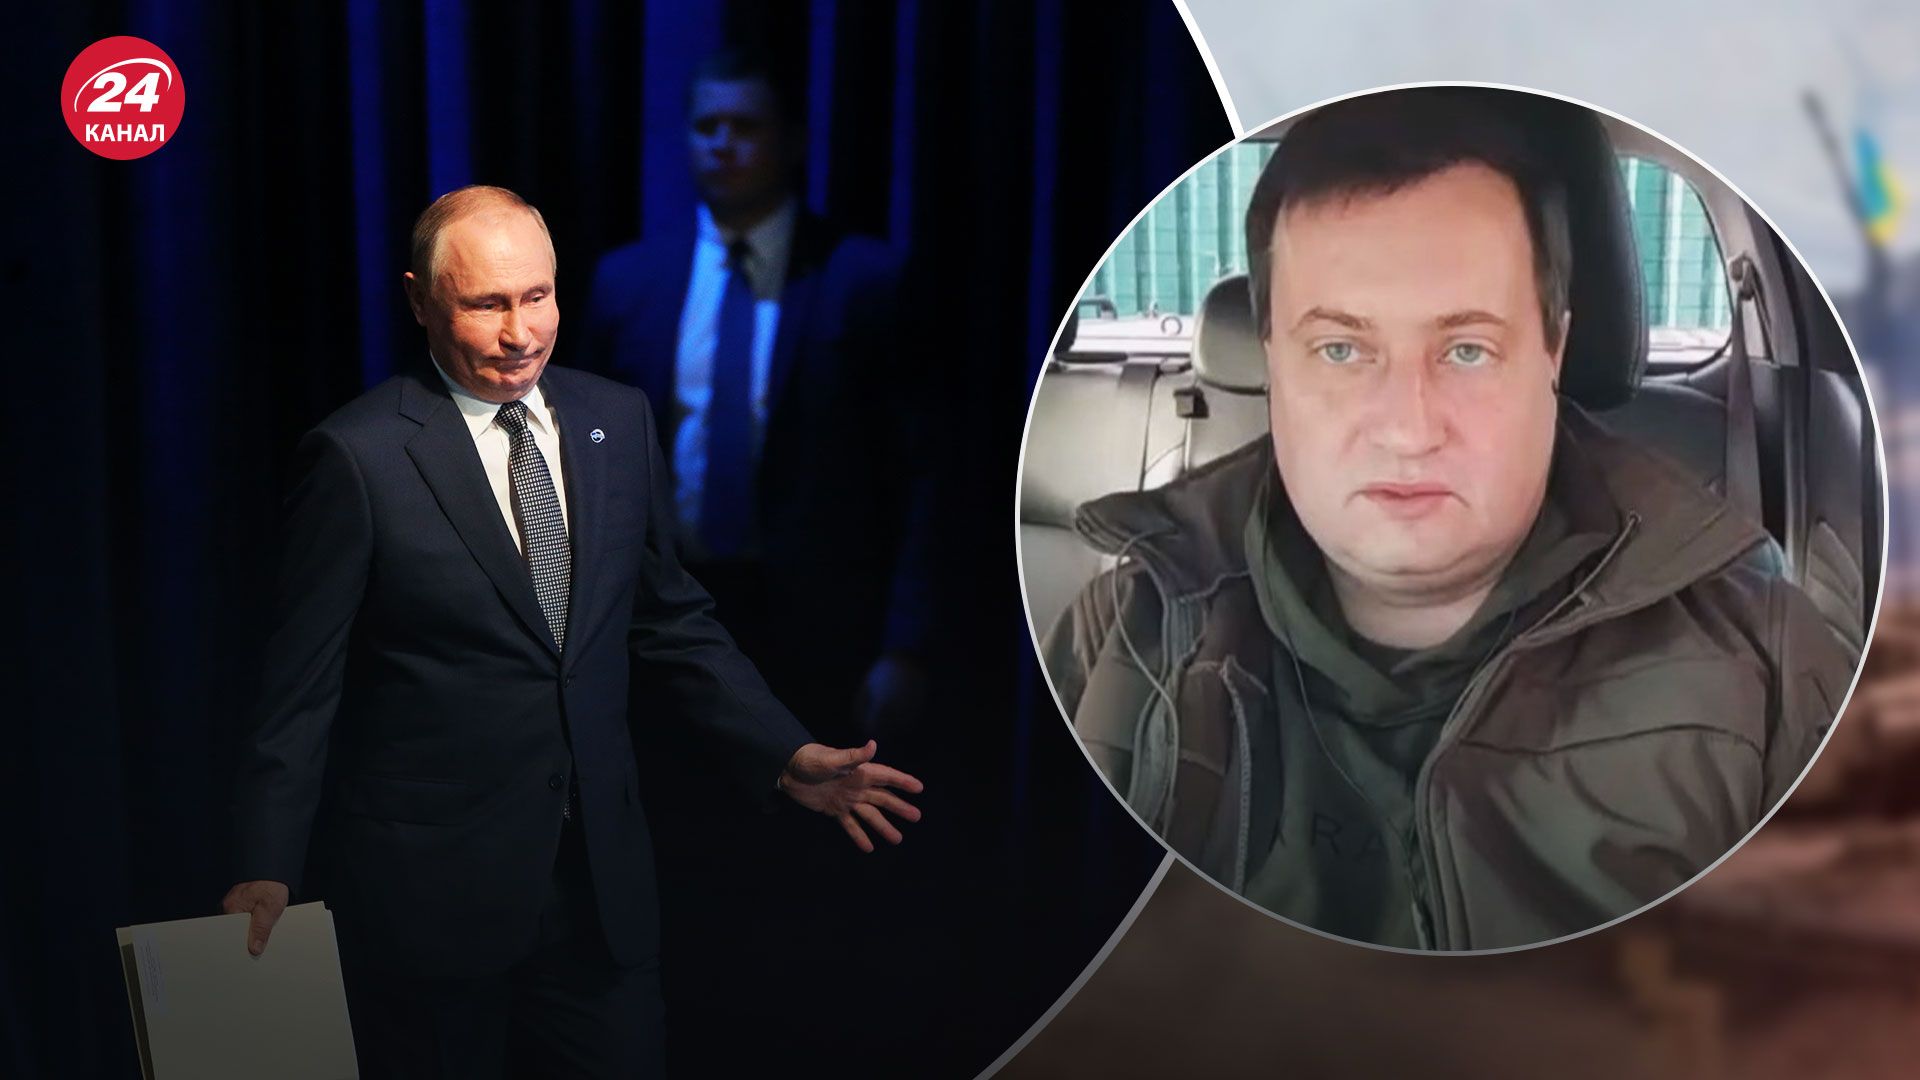 Пограничник предал Украину - как Россия использует предателя в пропаганде